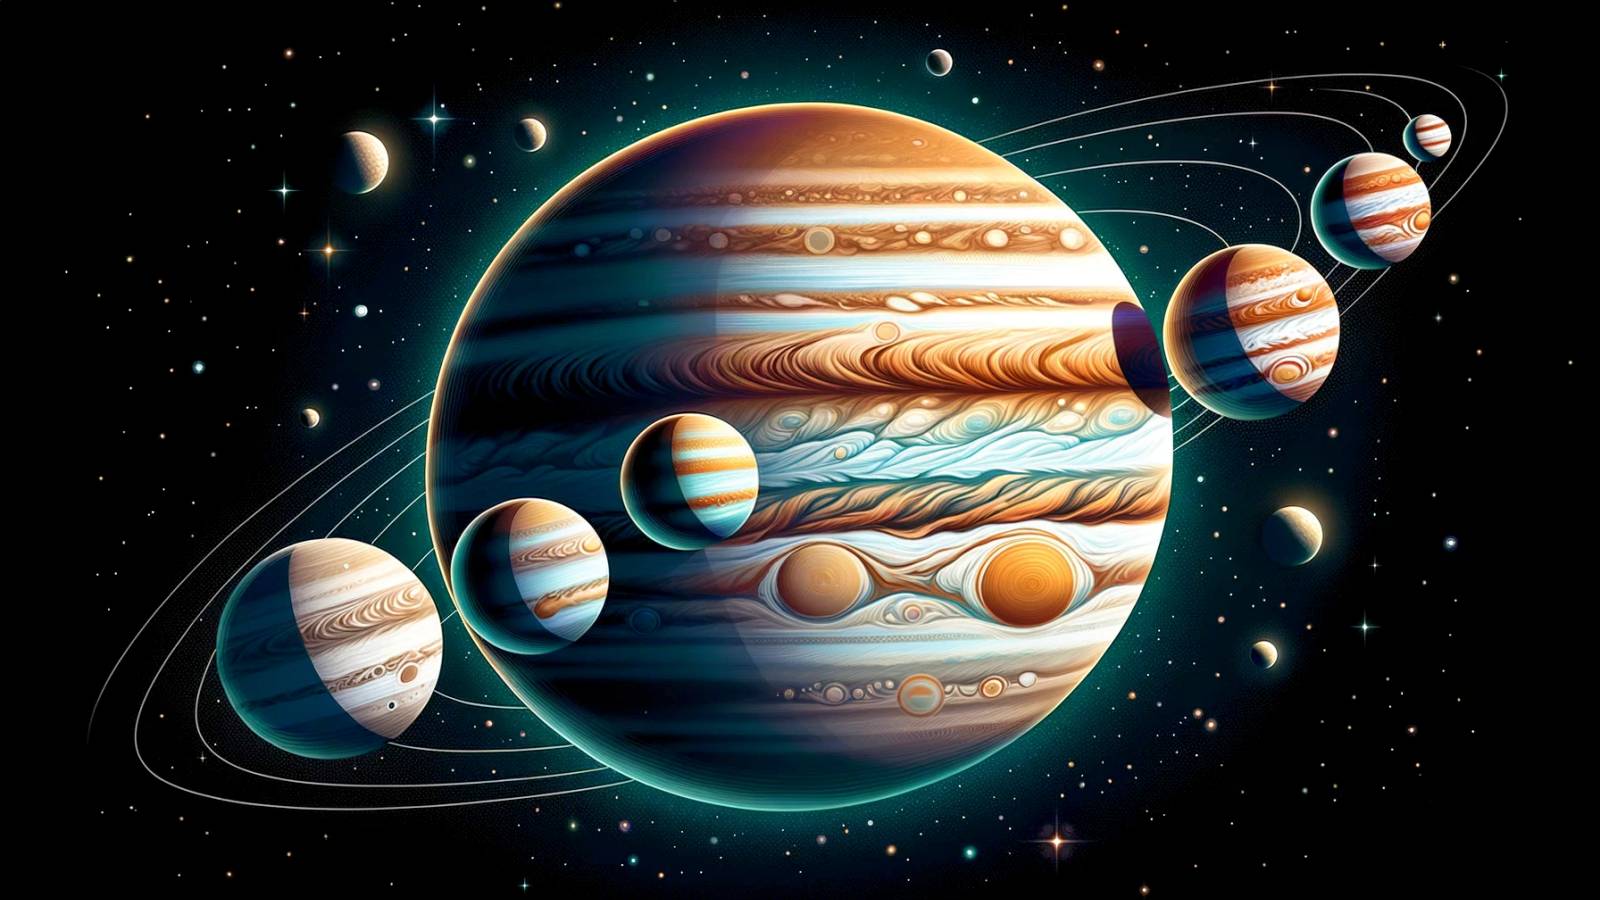 Planeten Jupiter OTROLIG Planforskare söker efter vattensatellitmånar